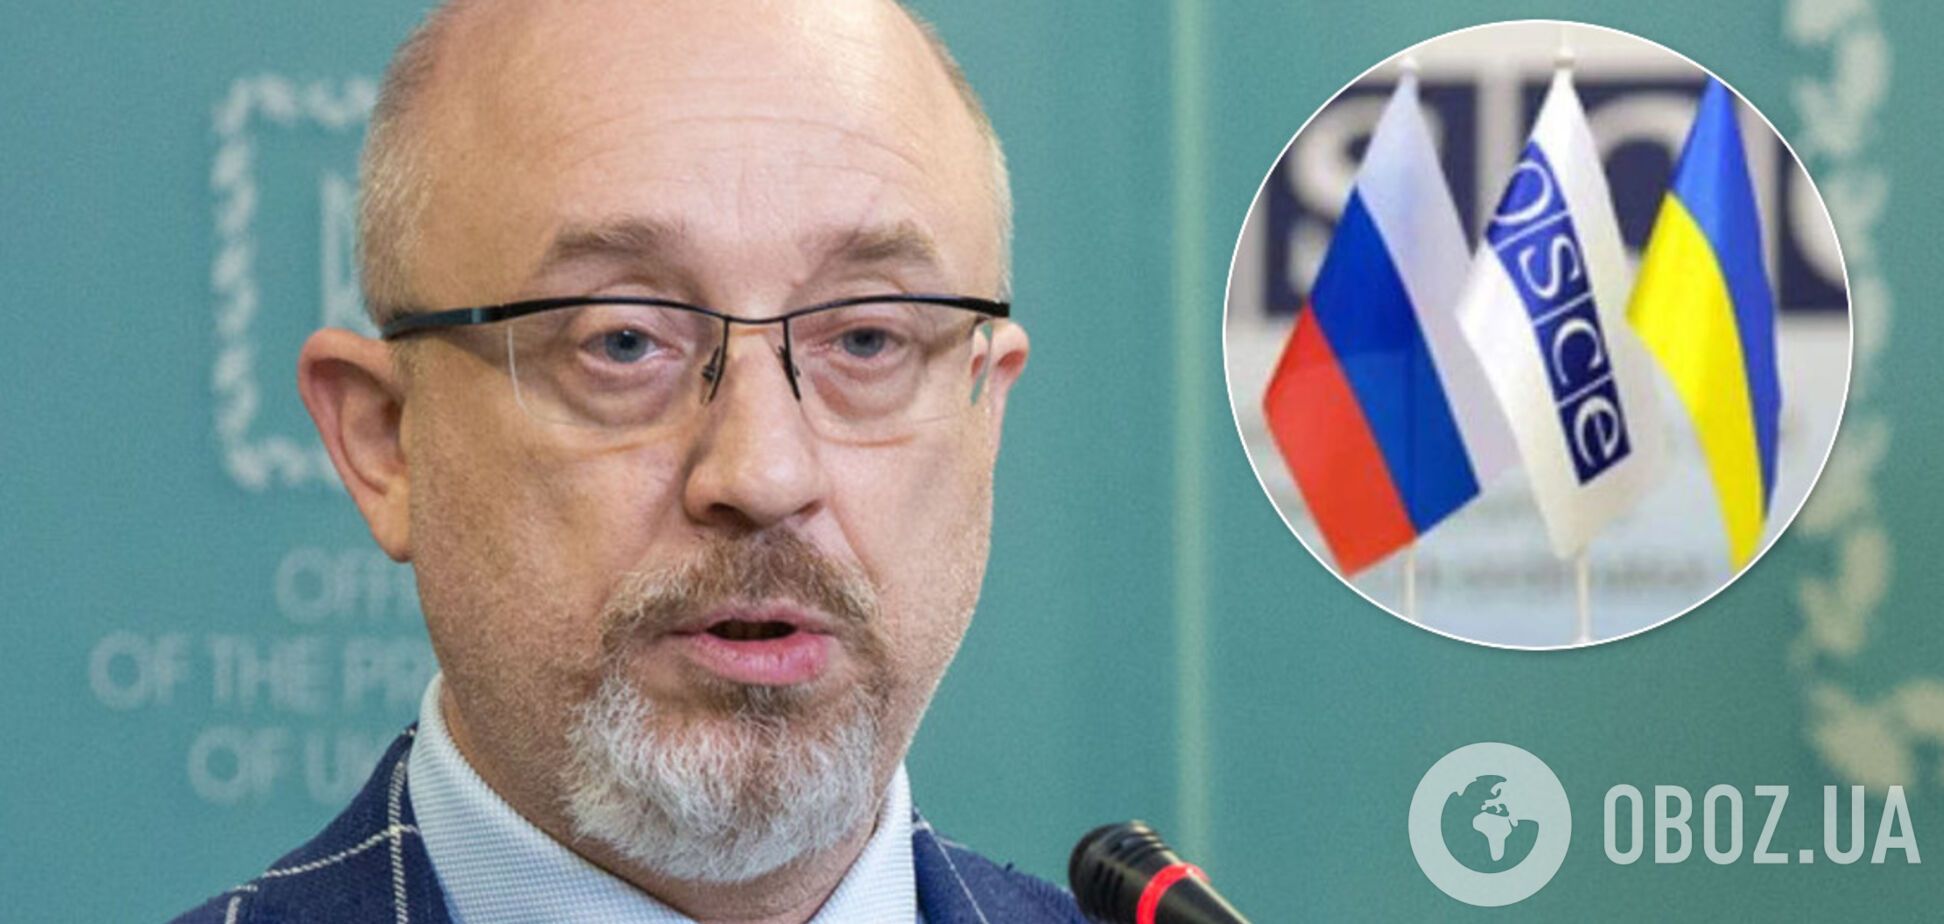 'Л/ДНР' не признает даже Россия: Резников заметил показательный момент в ТКГ